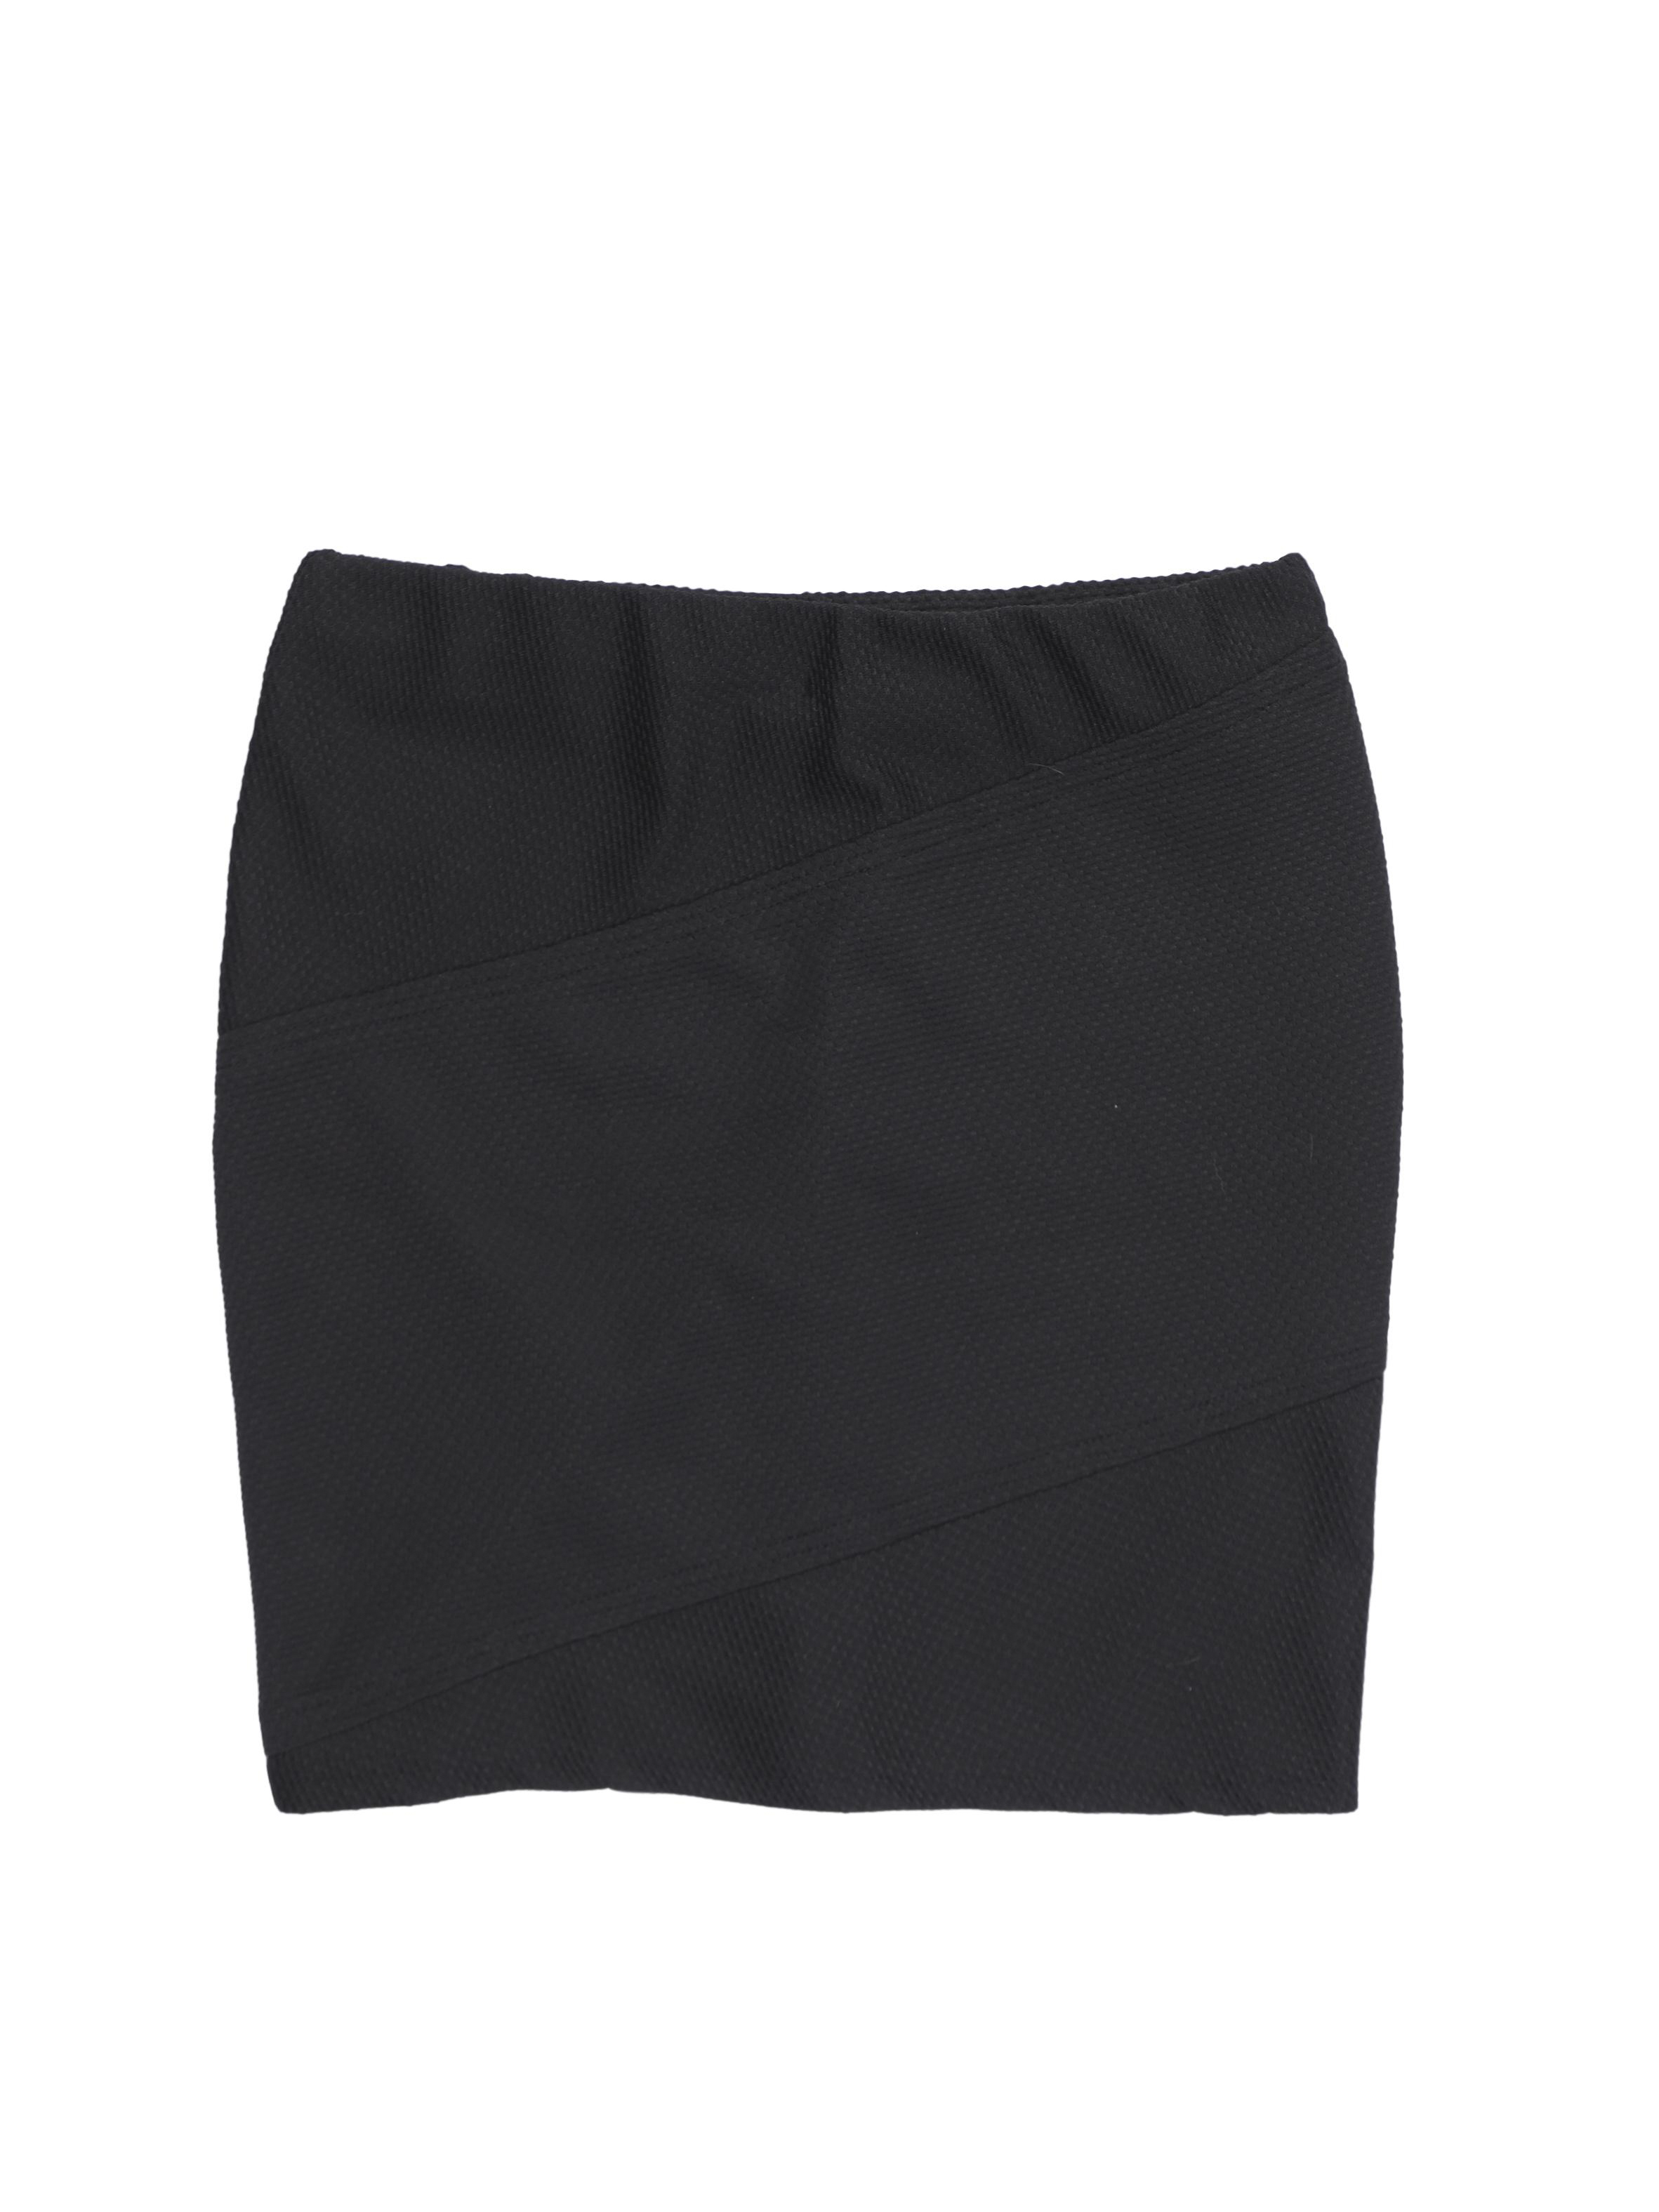 Falda Mossimo negra con textura y cortes diagonales, elástico en la cintura. Cintura 72-80cm Largo 44cm